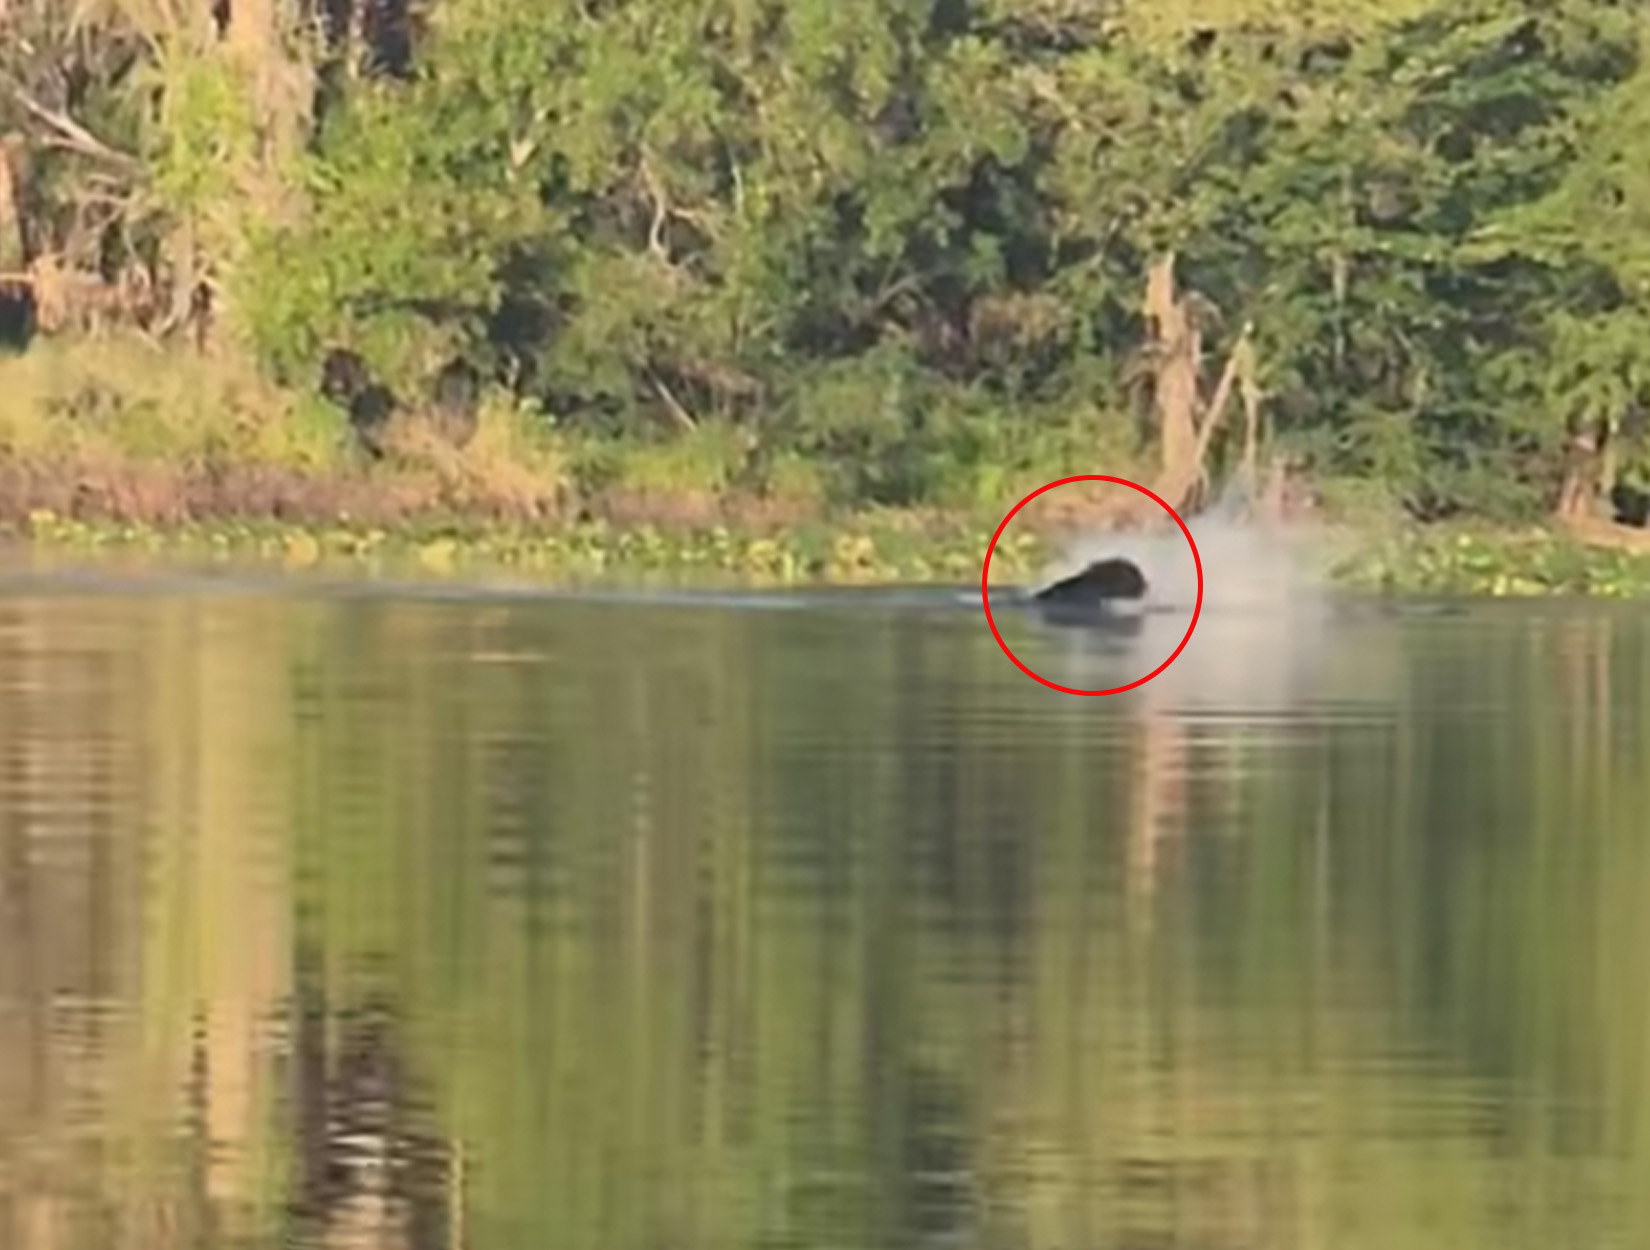 A bear swats an alligator mid-river.